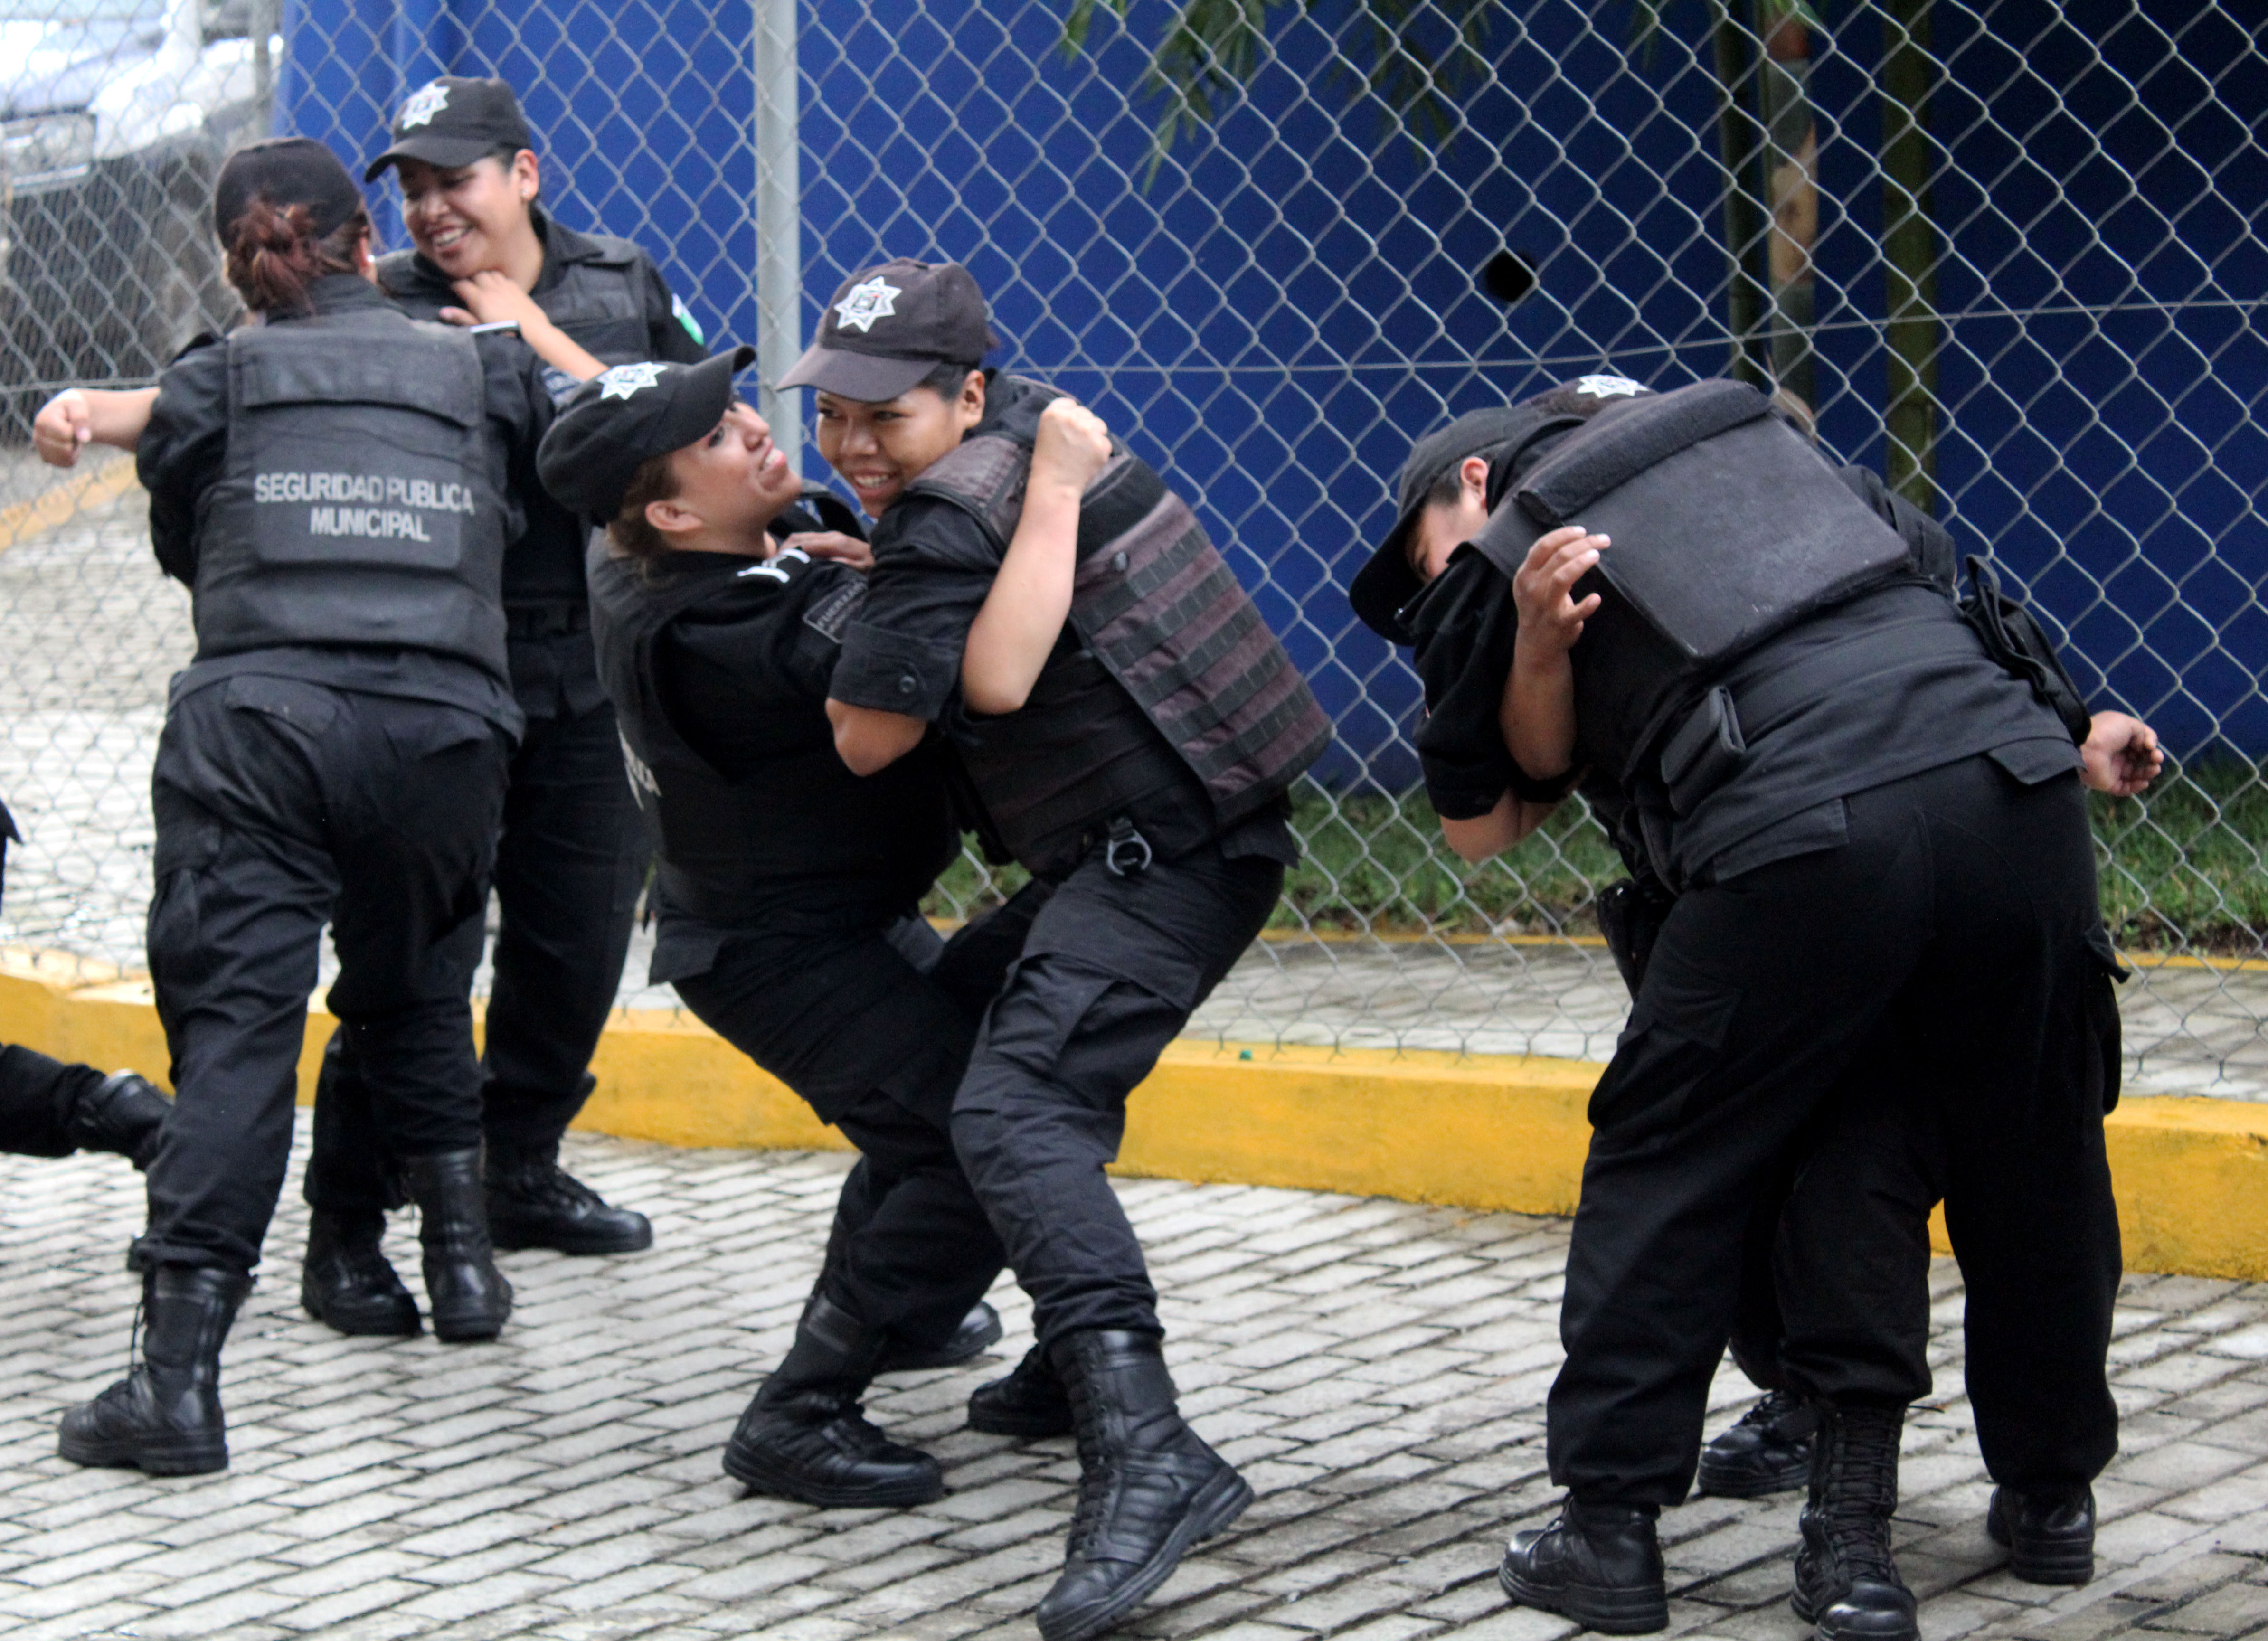 Entregan armamento y capacitan a policías de Xicotepec